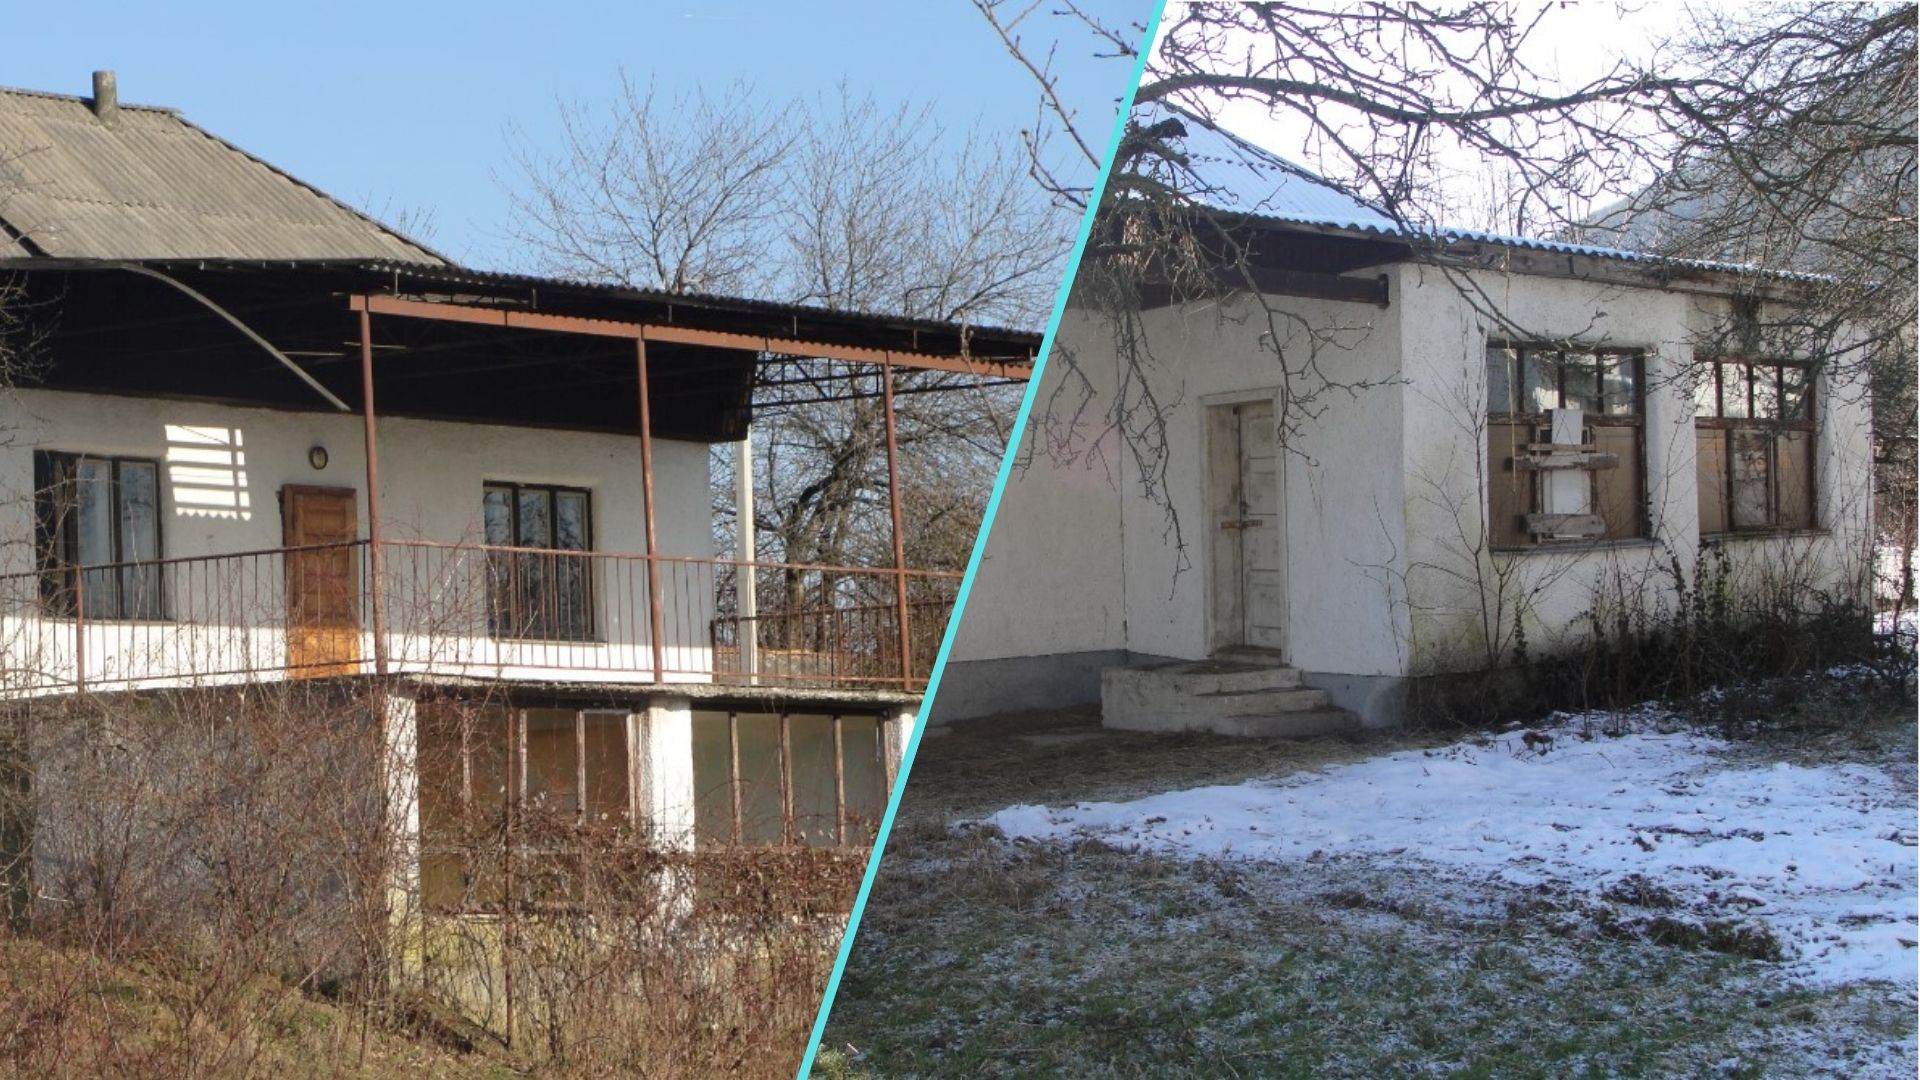 Фонд державного майна України оголосив про аукціон з продажу будинку відпочинку “Виннички”, який розташований в рекреаційній частині міста Виноградів.